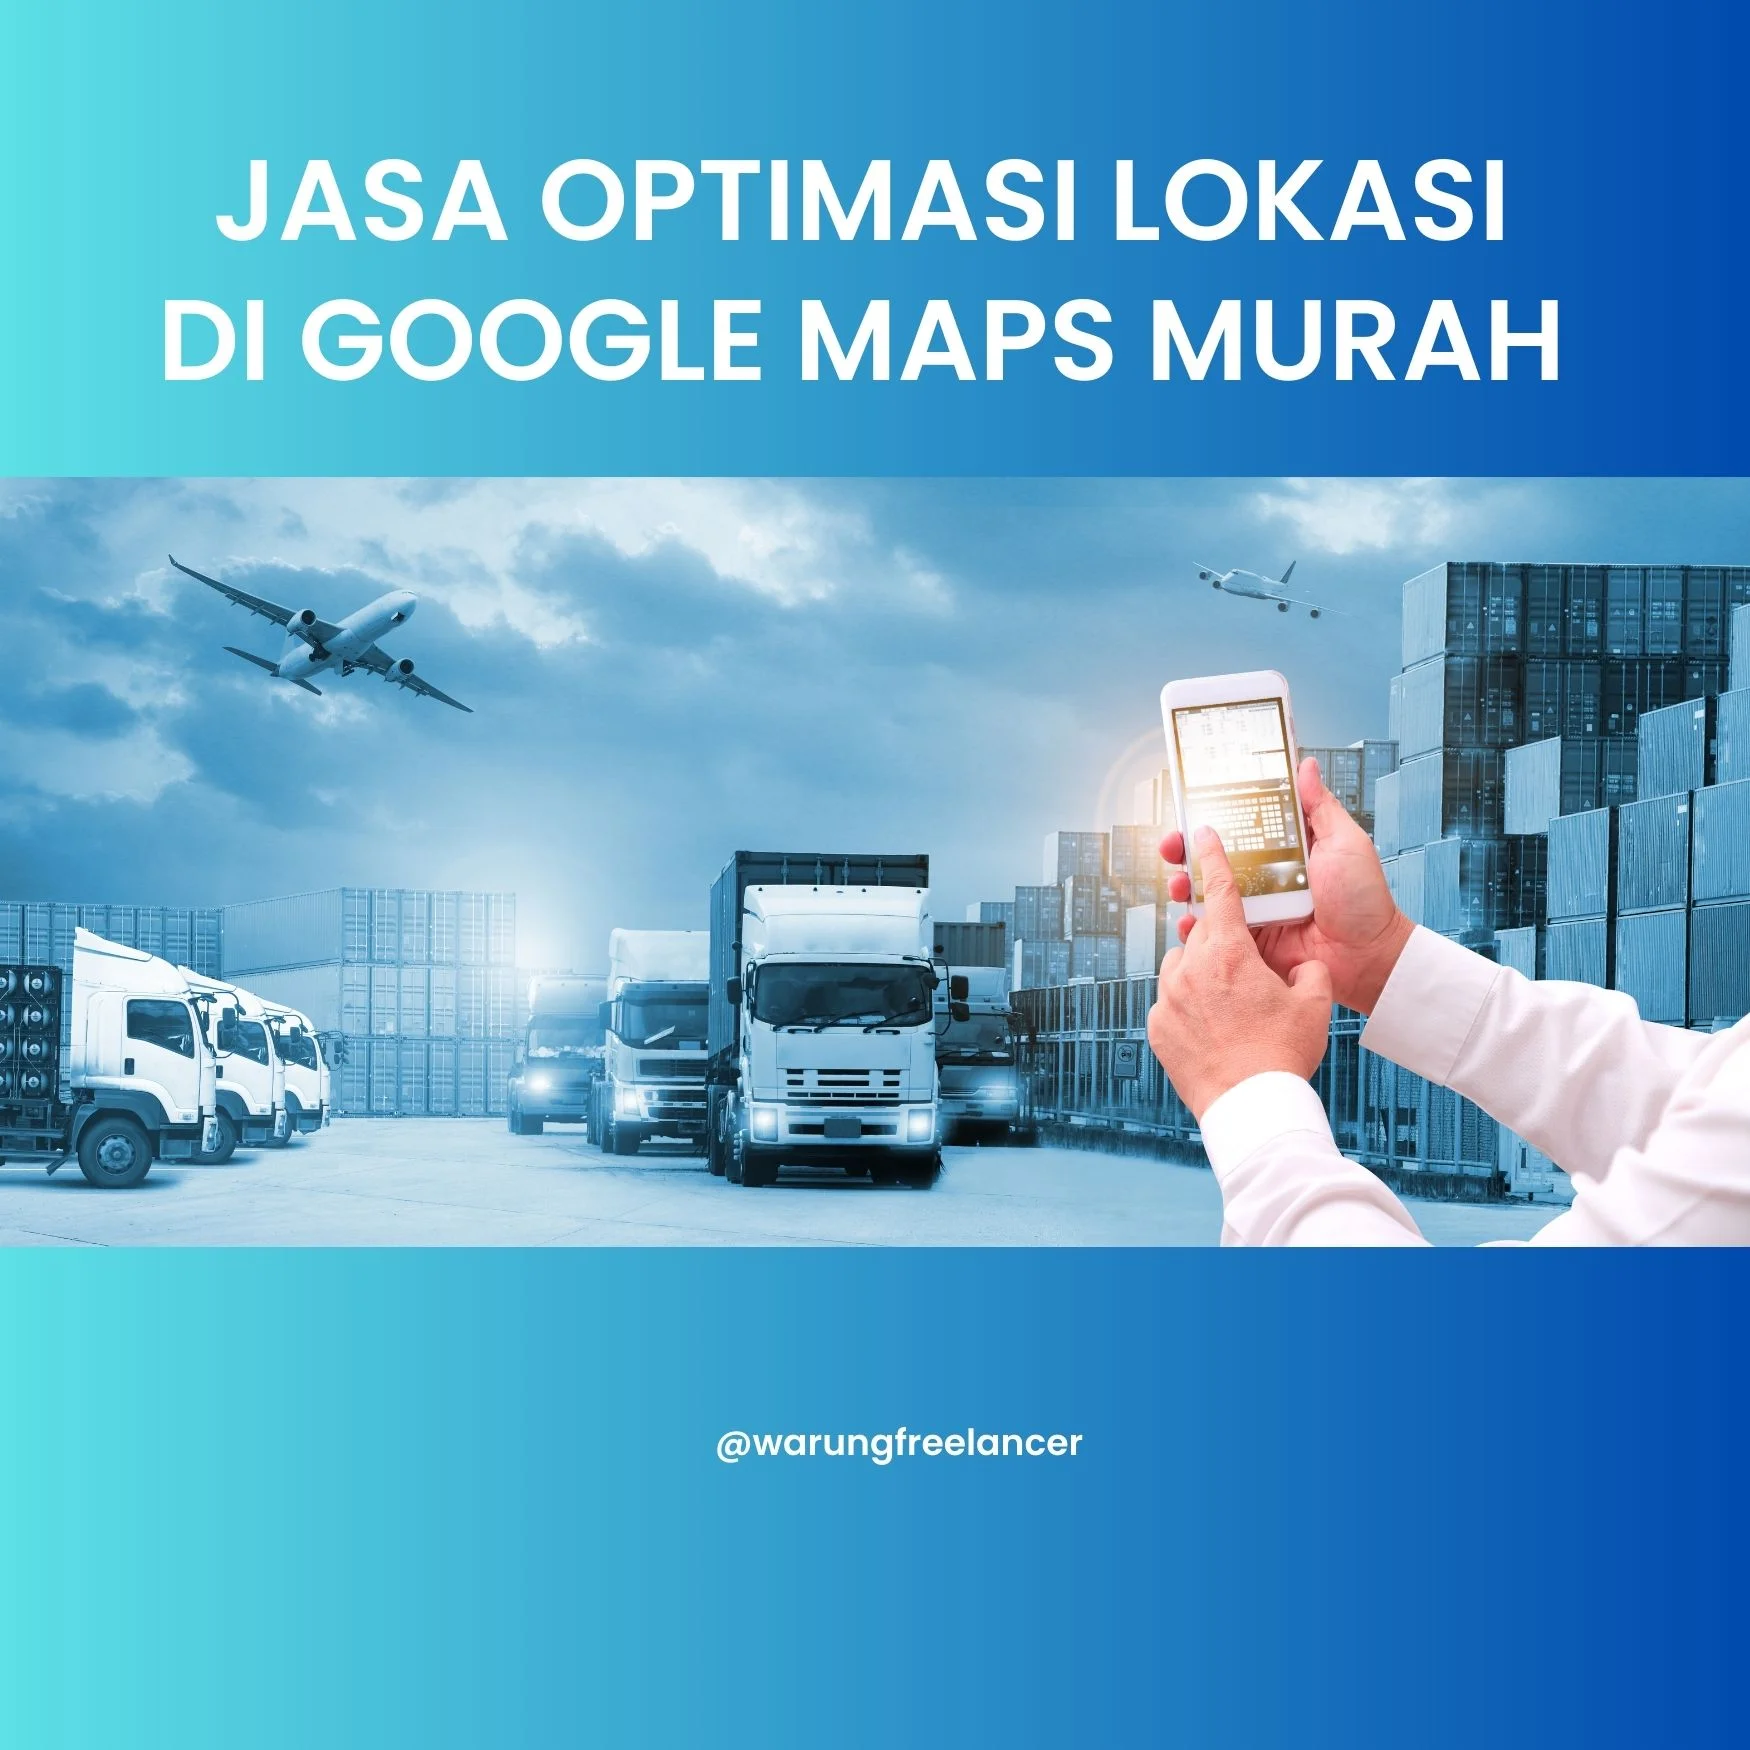 Pengertian Jasa Optimasi Lokasi Di Google Maps Murah